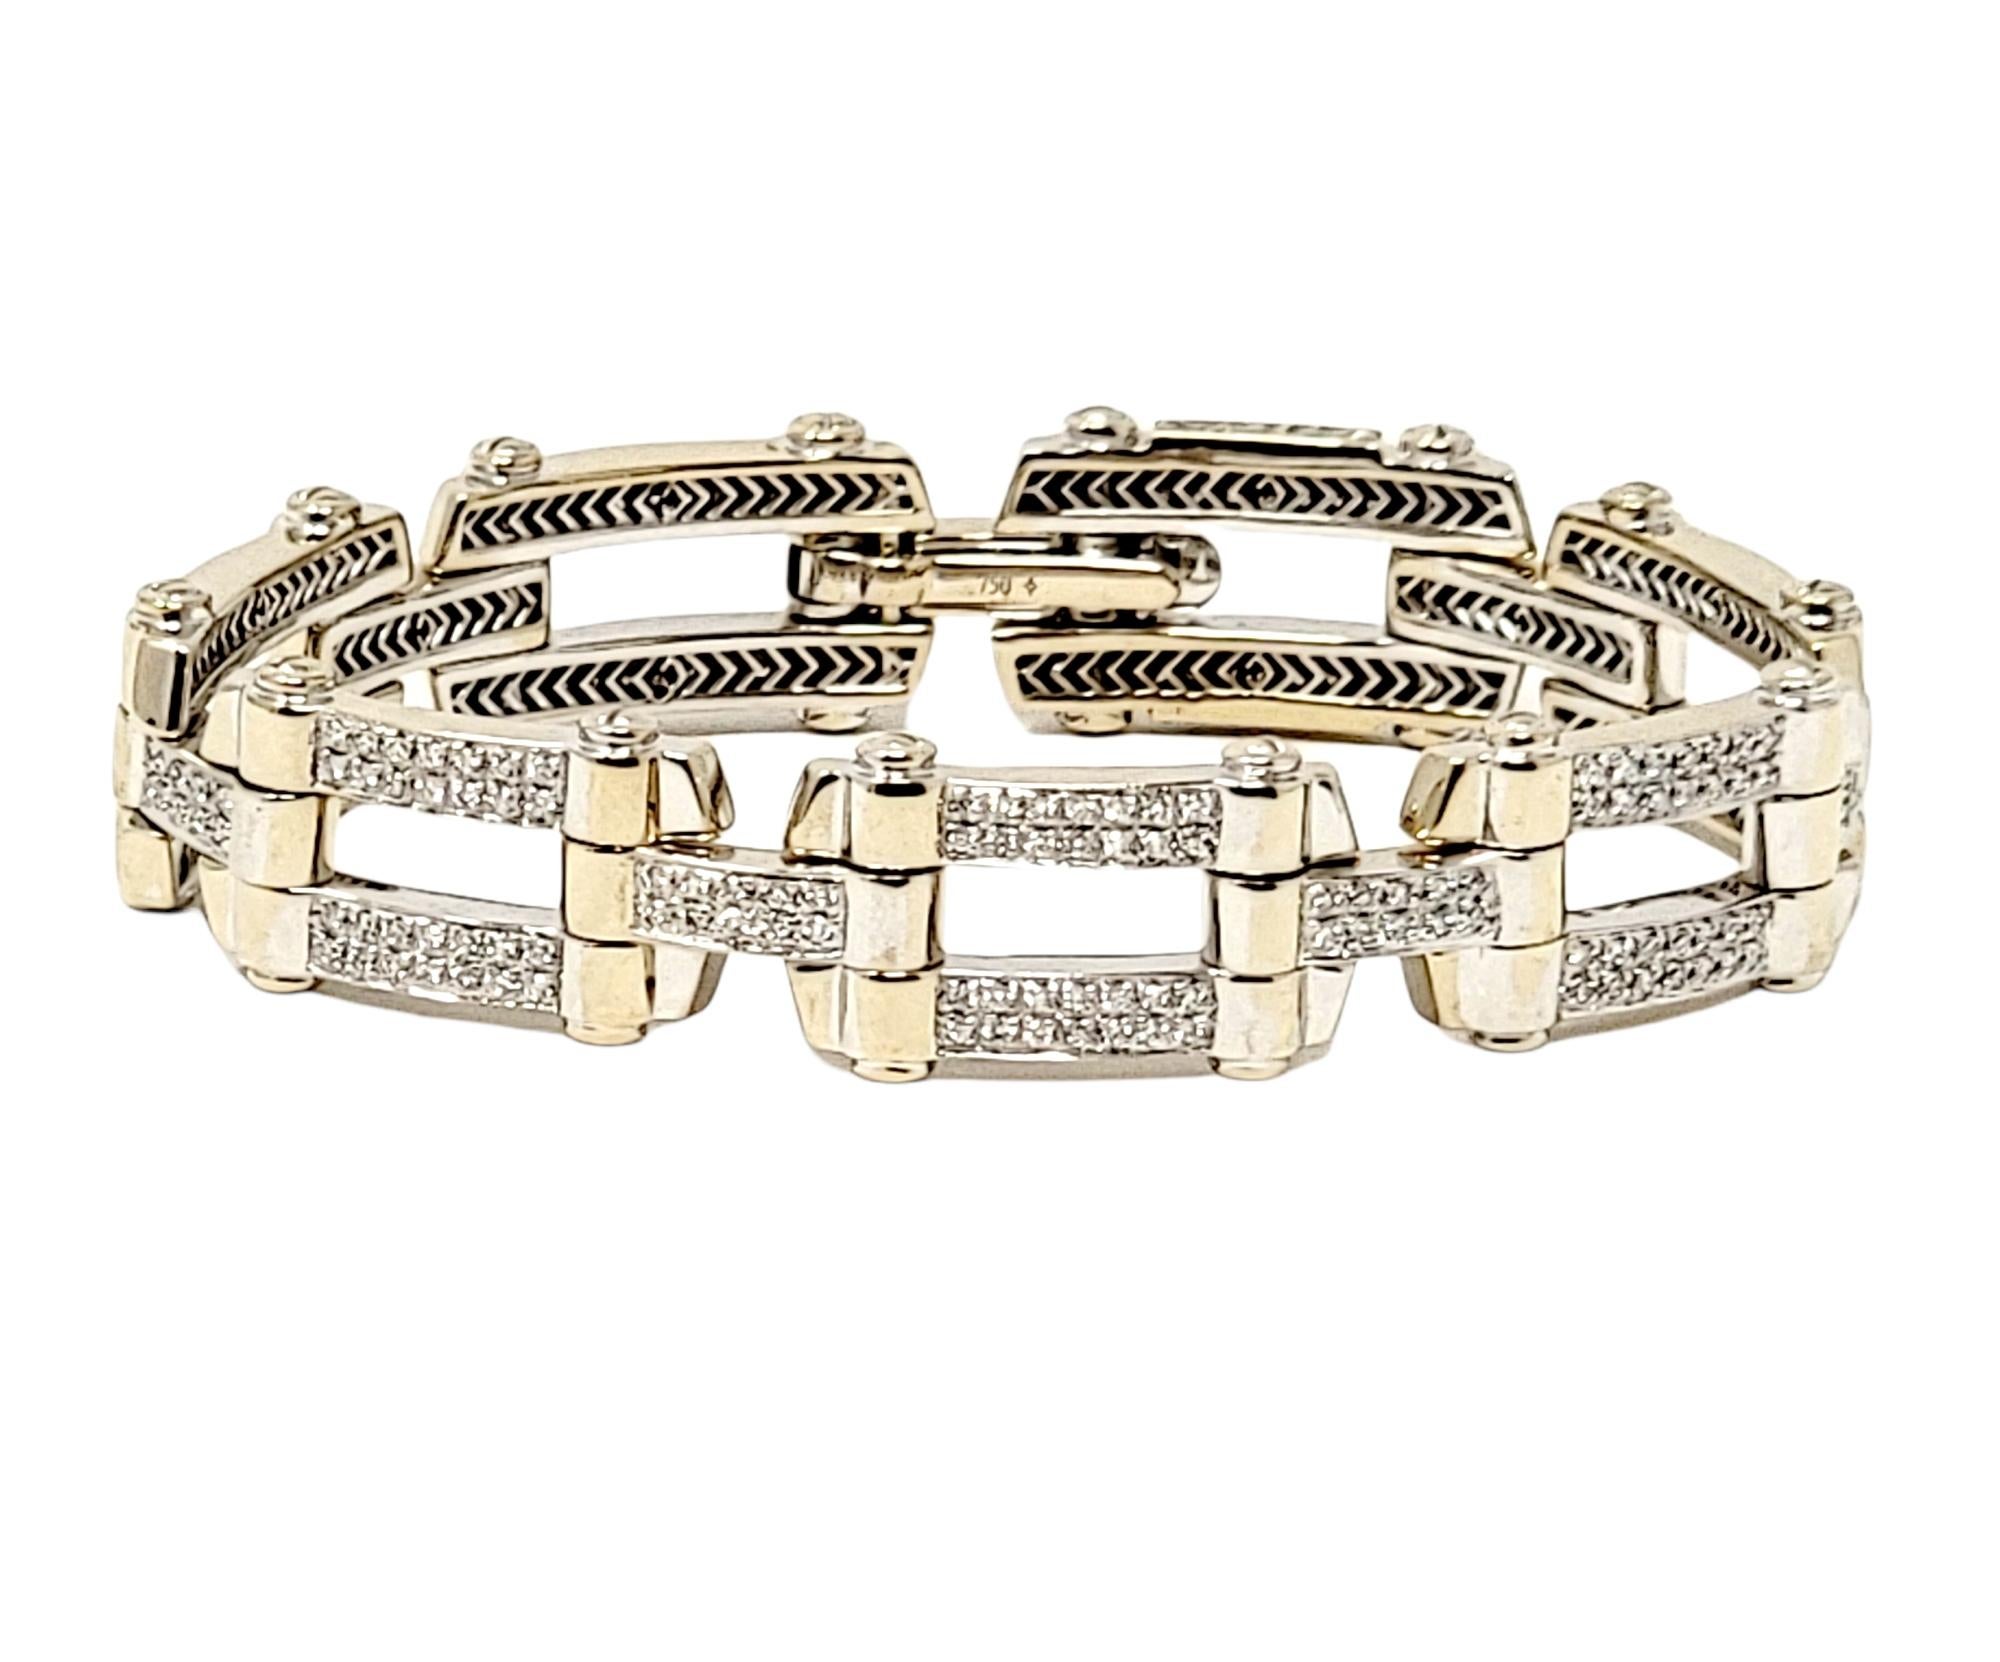 Wunderschönes Gliederarmband aus Weißgold und Diamanten des Designers Philippe Charriol. Das schlichte, moderne Design dieses atemberaubenden Schmuckstücks in Verbindung mit den weißen Brillanten zieht die Aufmerksamkeit des Betrachters auf sich und